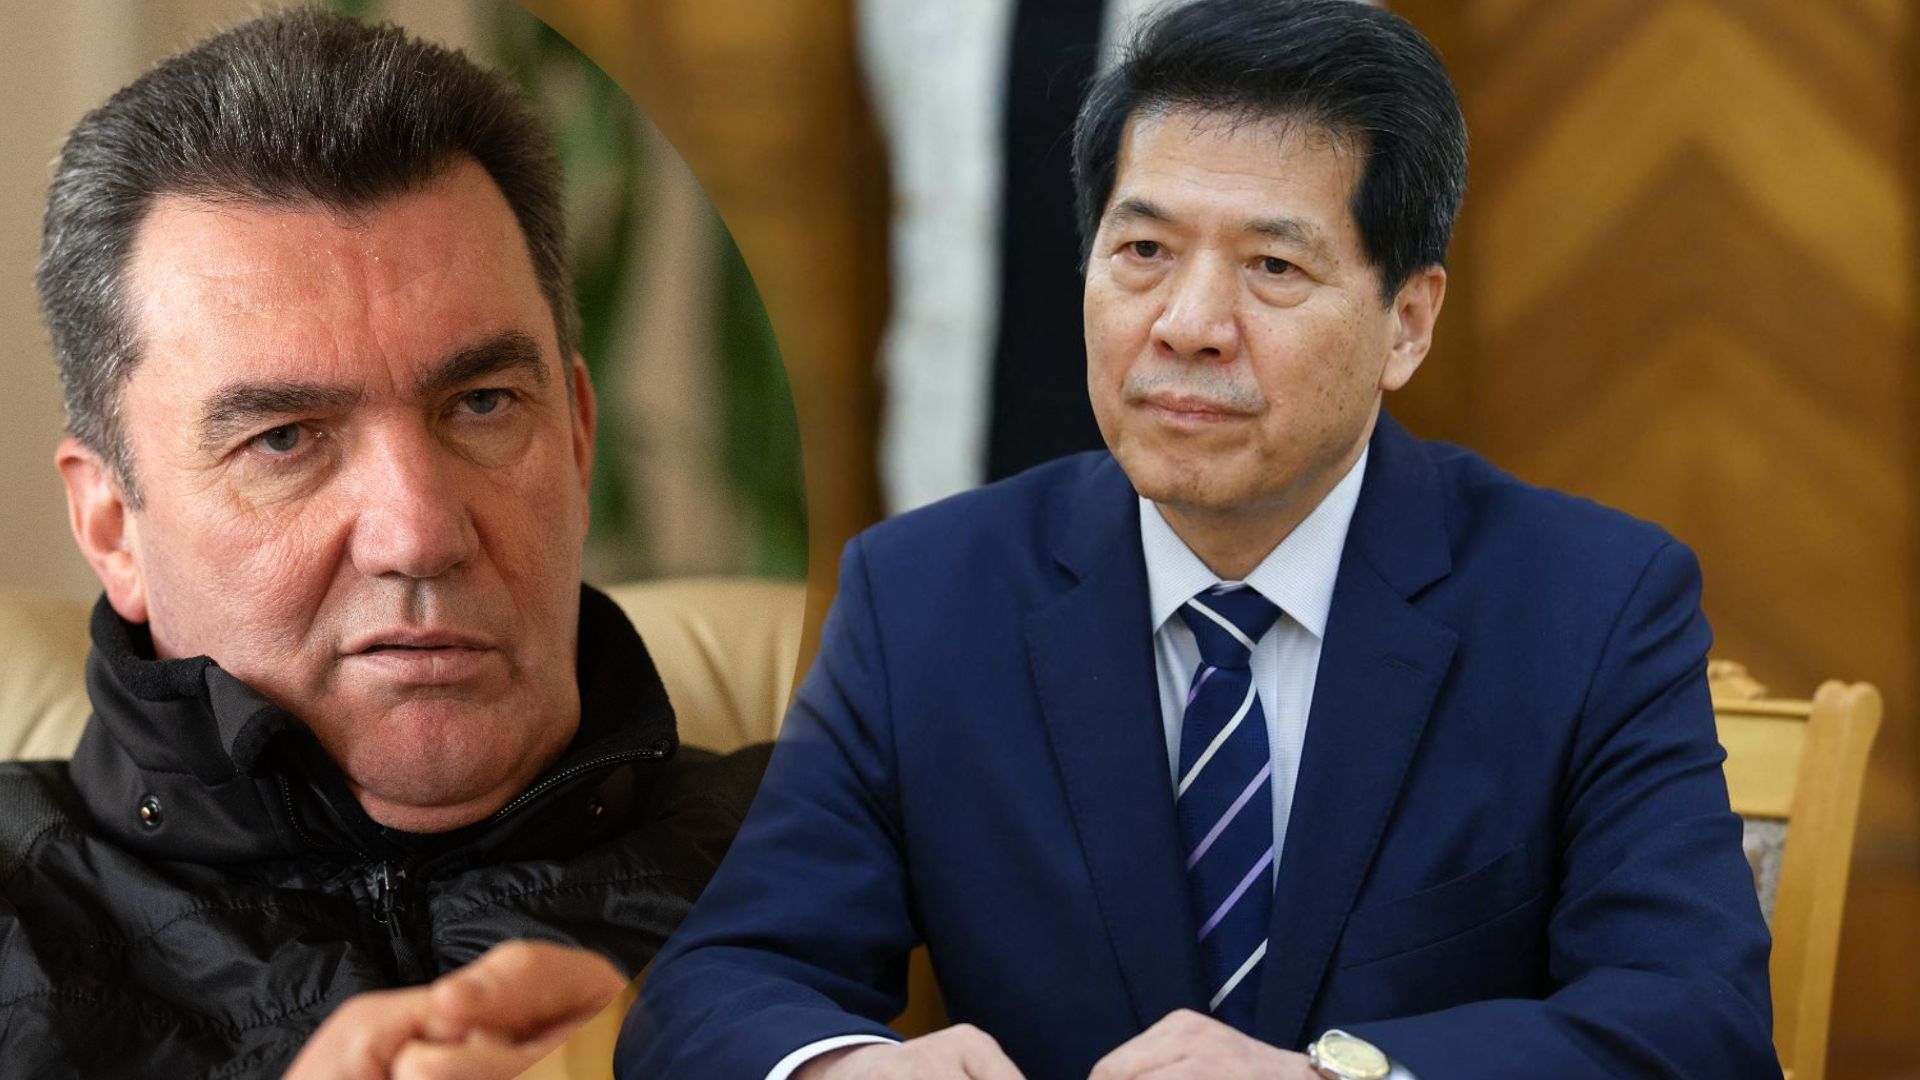 Данілов відреагував на заяву представника Китаю щодо переговорів